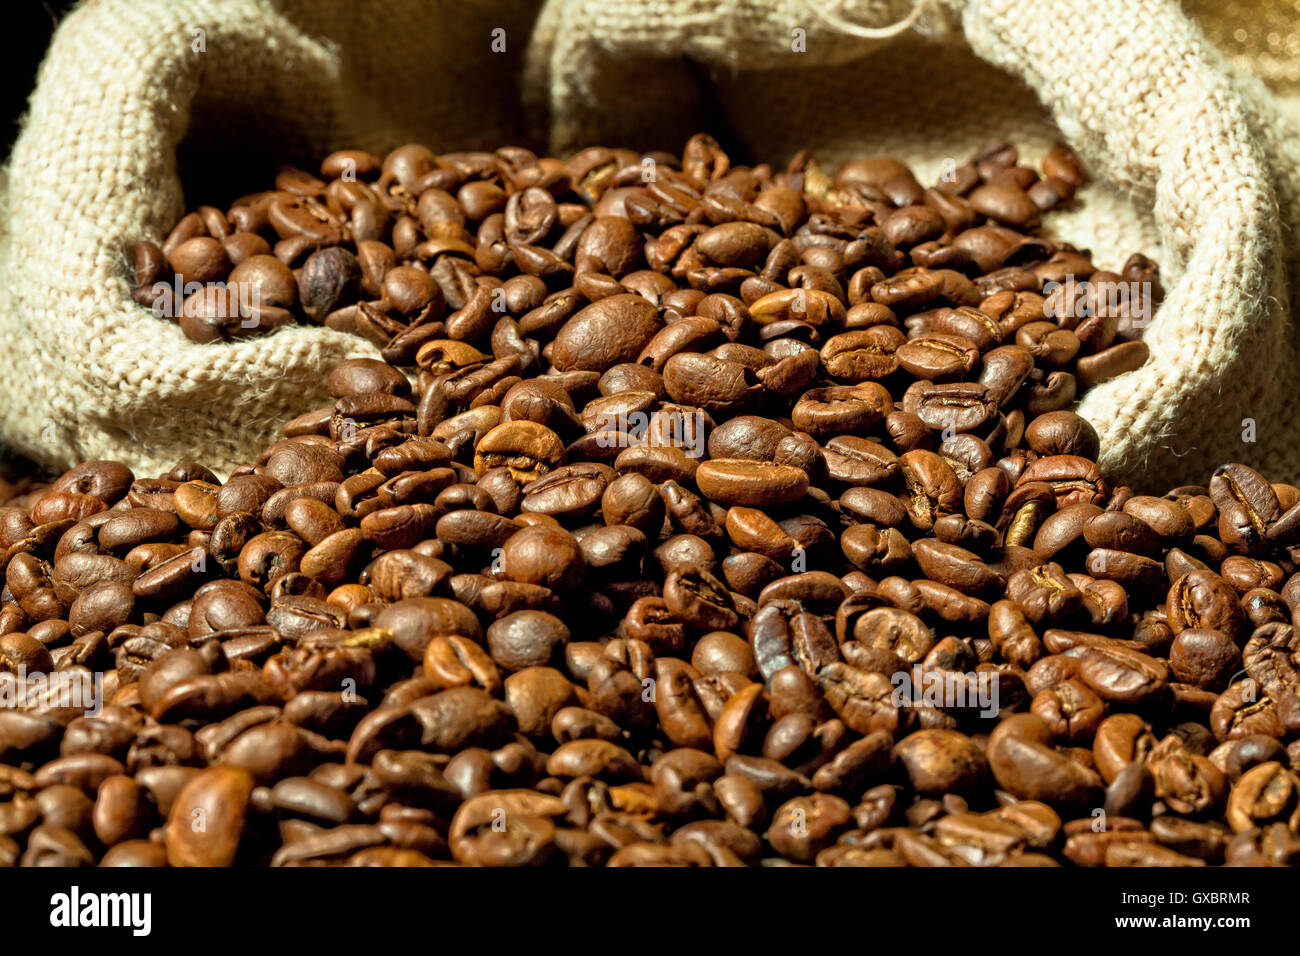 real espresso and coffee grain Stock Photo